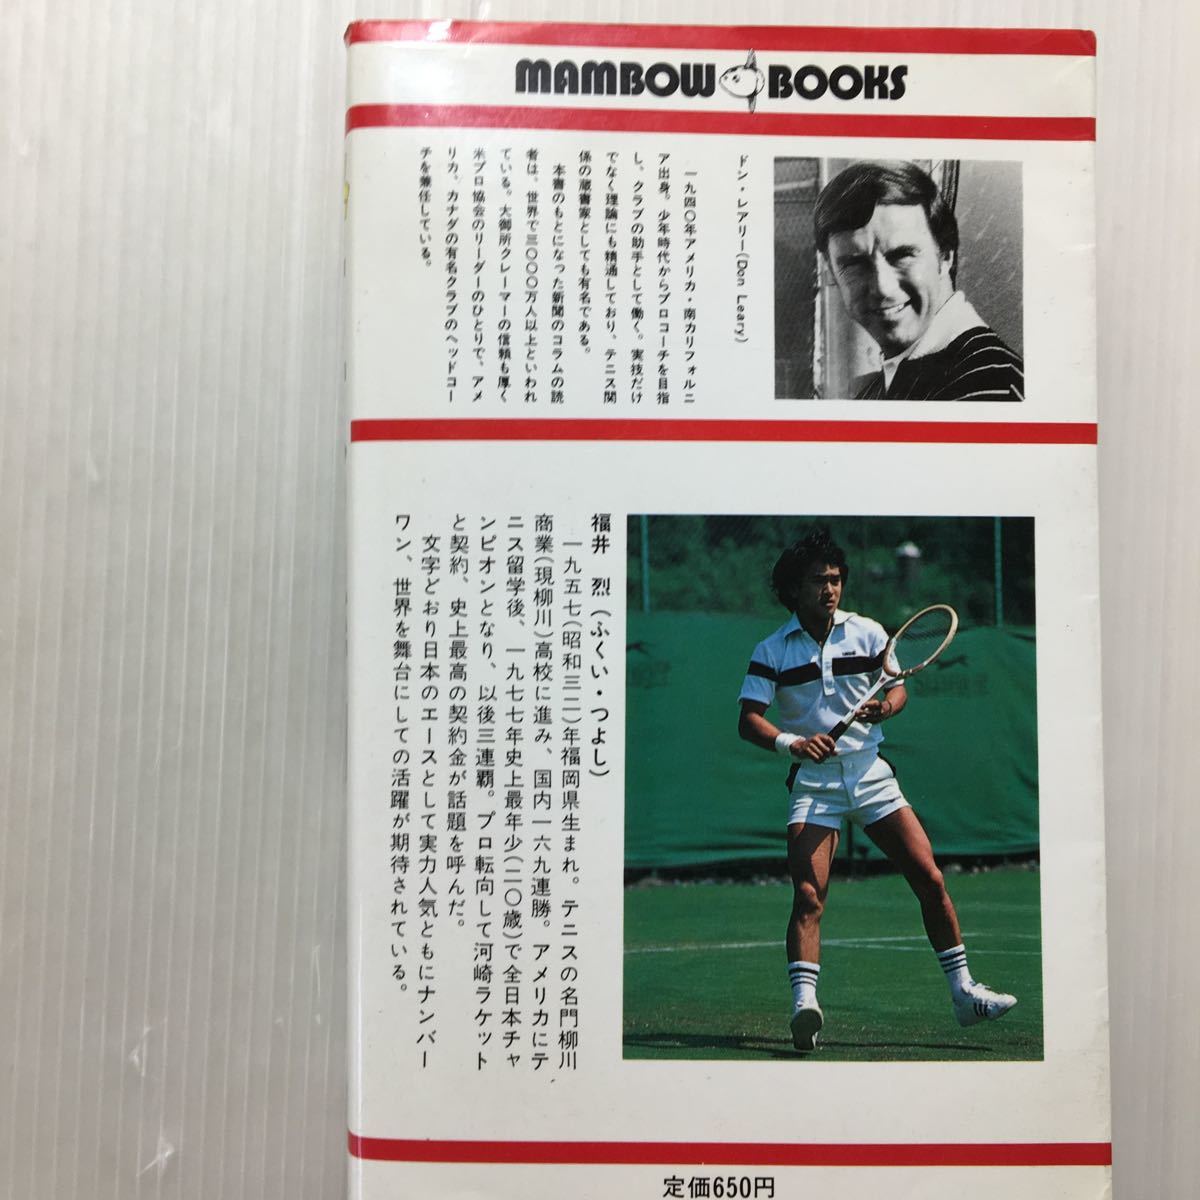 zaa-510♪テニスの急所191―イメージピクチャー (マンボウ・ブックス) 新書 1980/11/1 ドン・J.レアリー (著)